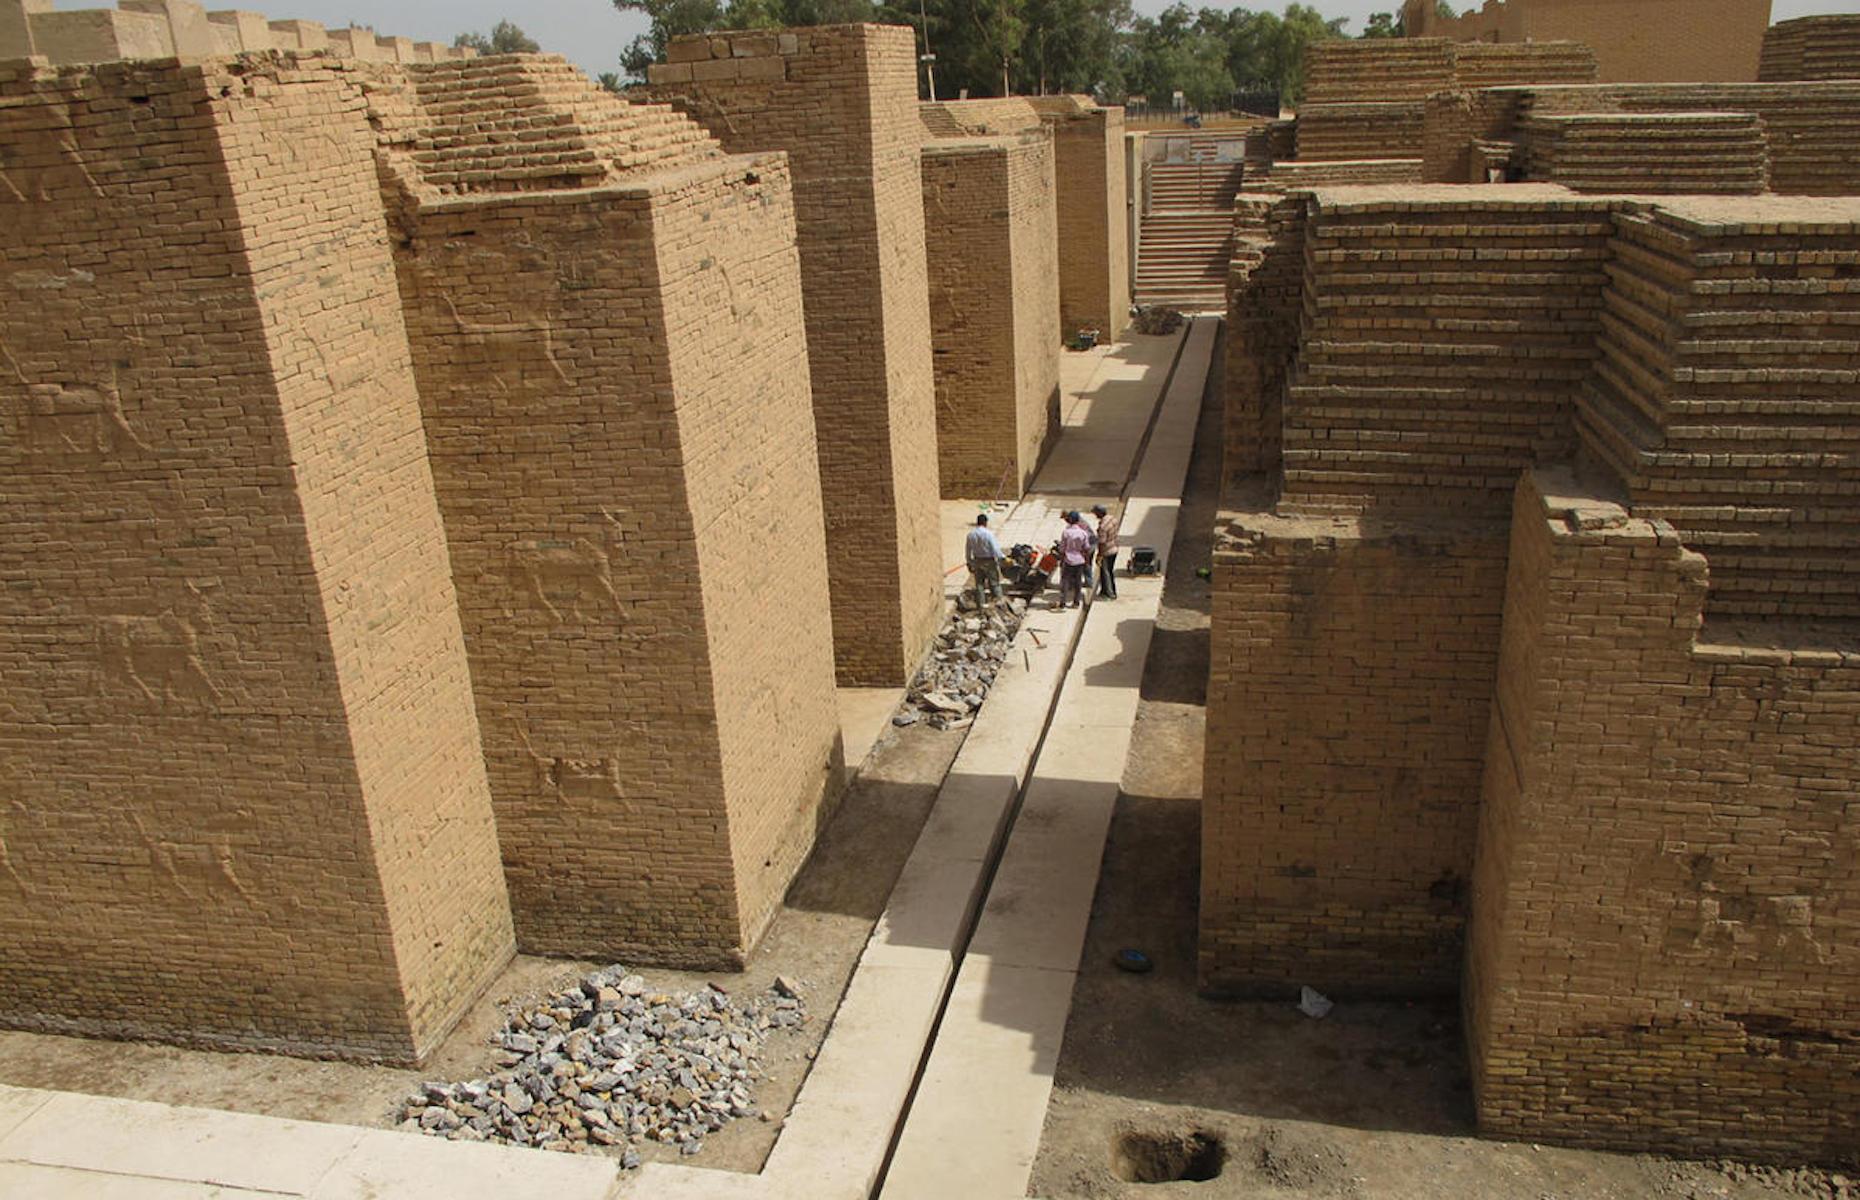 The Hanging Gardens of Babylon, Iraq